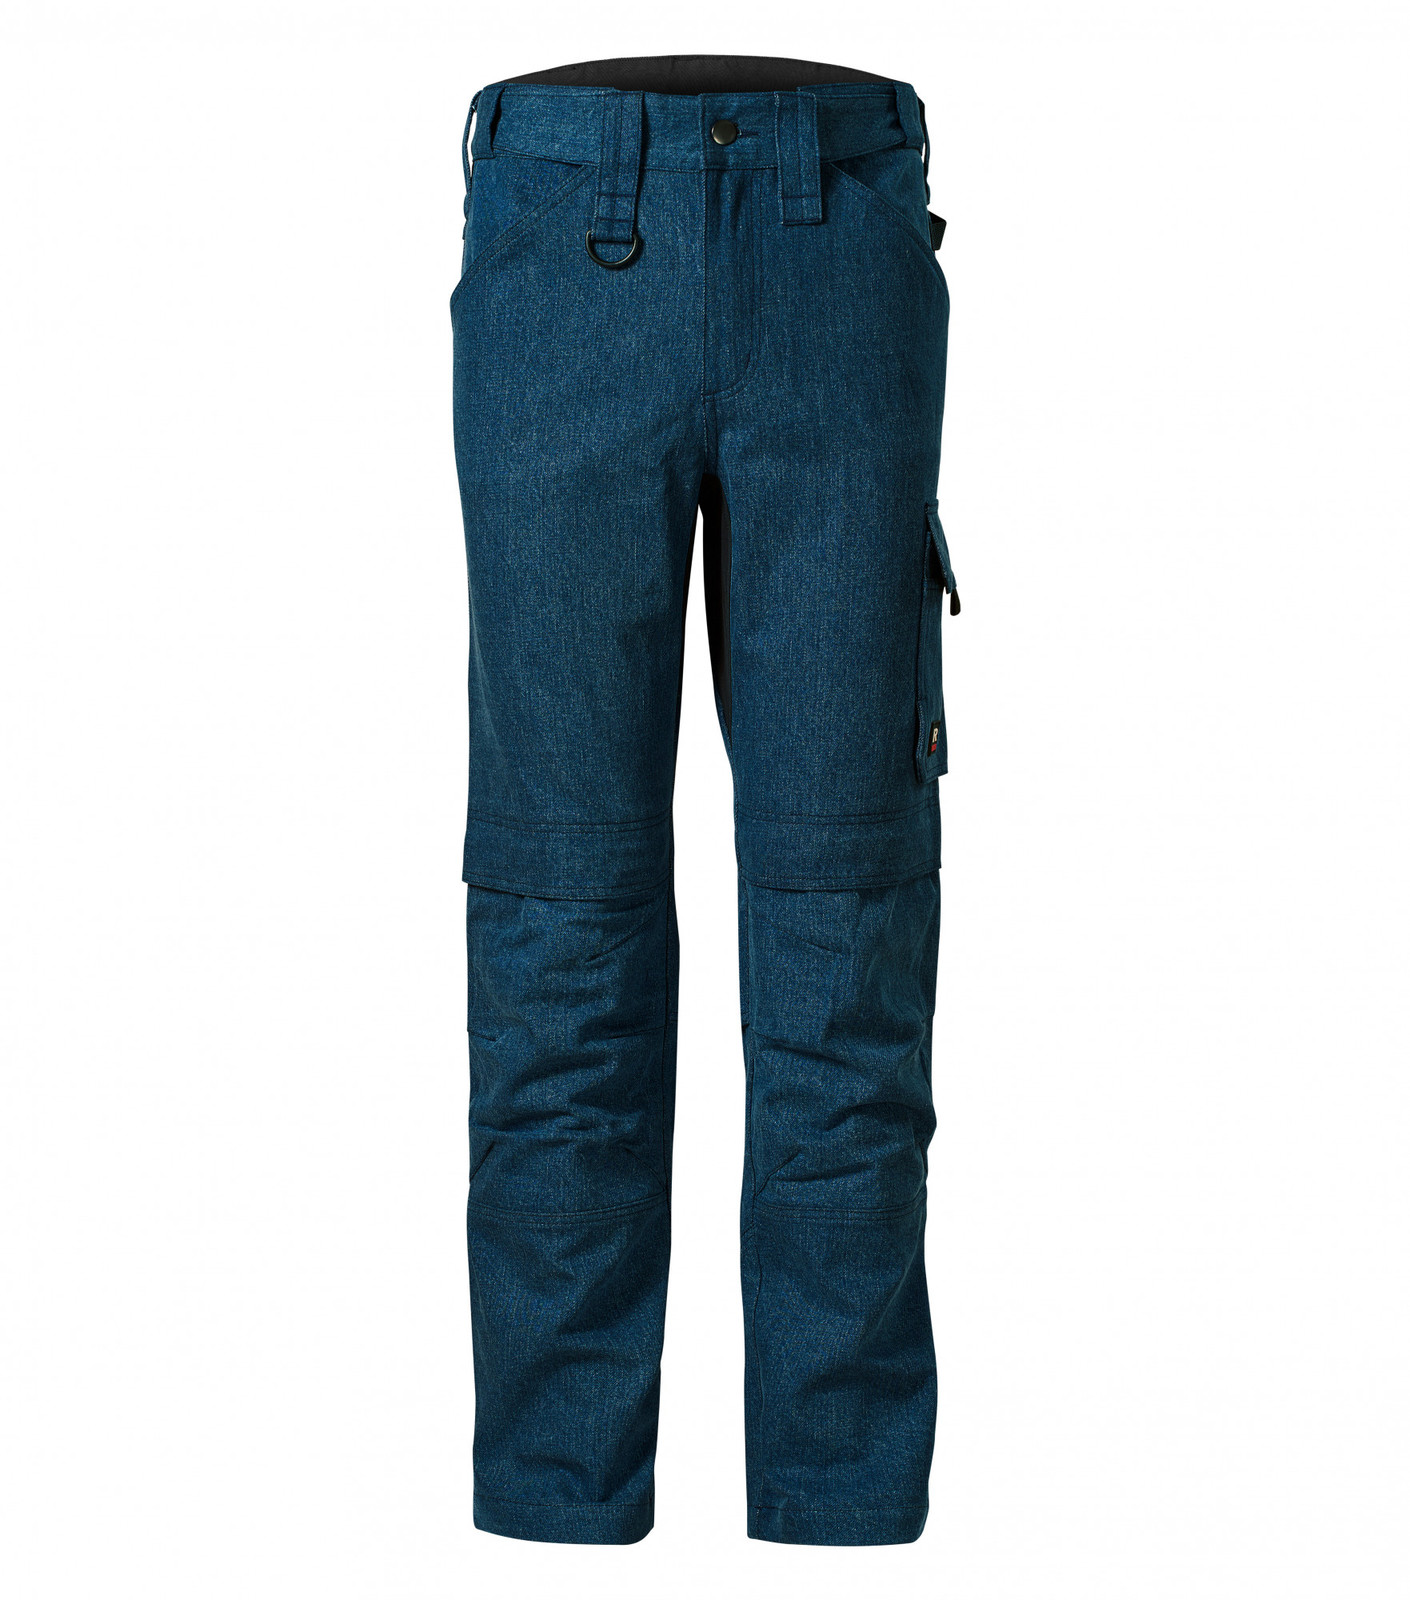 Pánske pracovné džínsy Rimeck Vertex W08 - veľkosť: 58 predĺžené, farba: tmavá navy